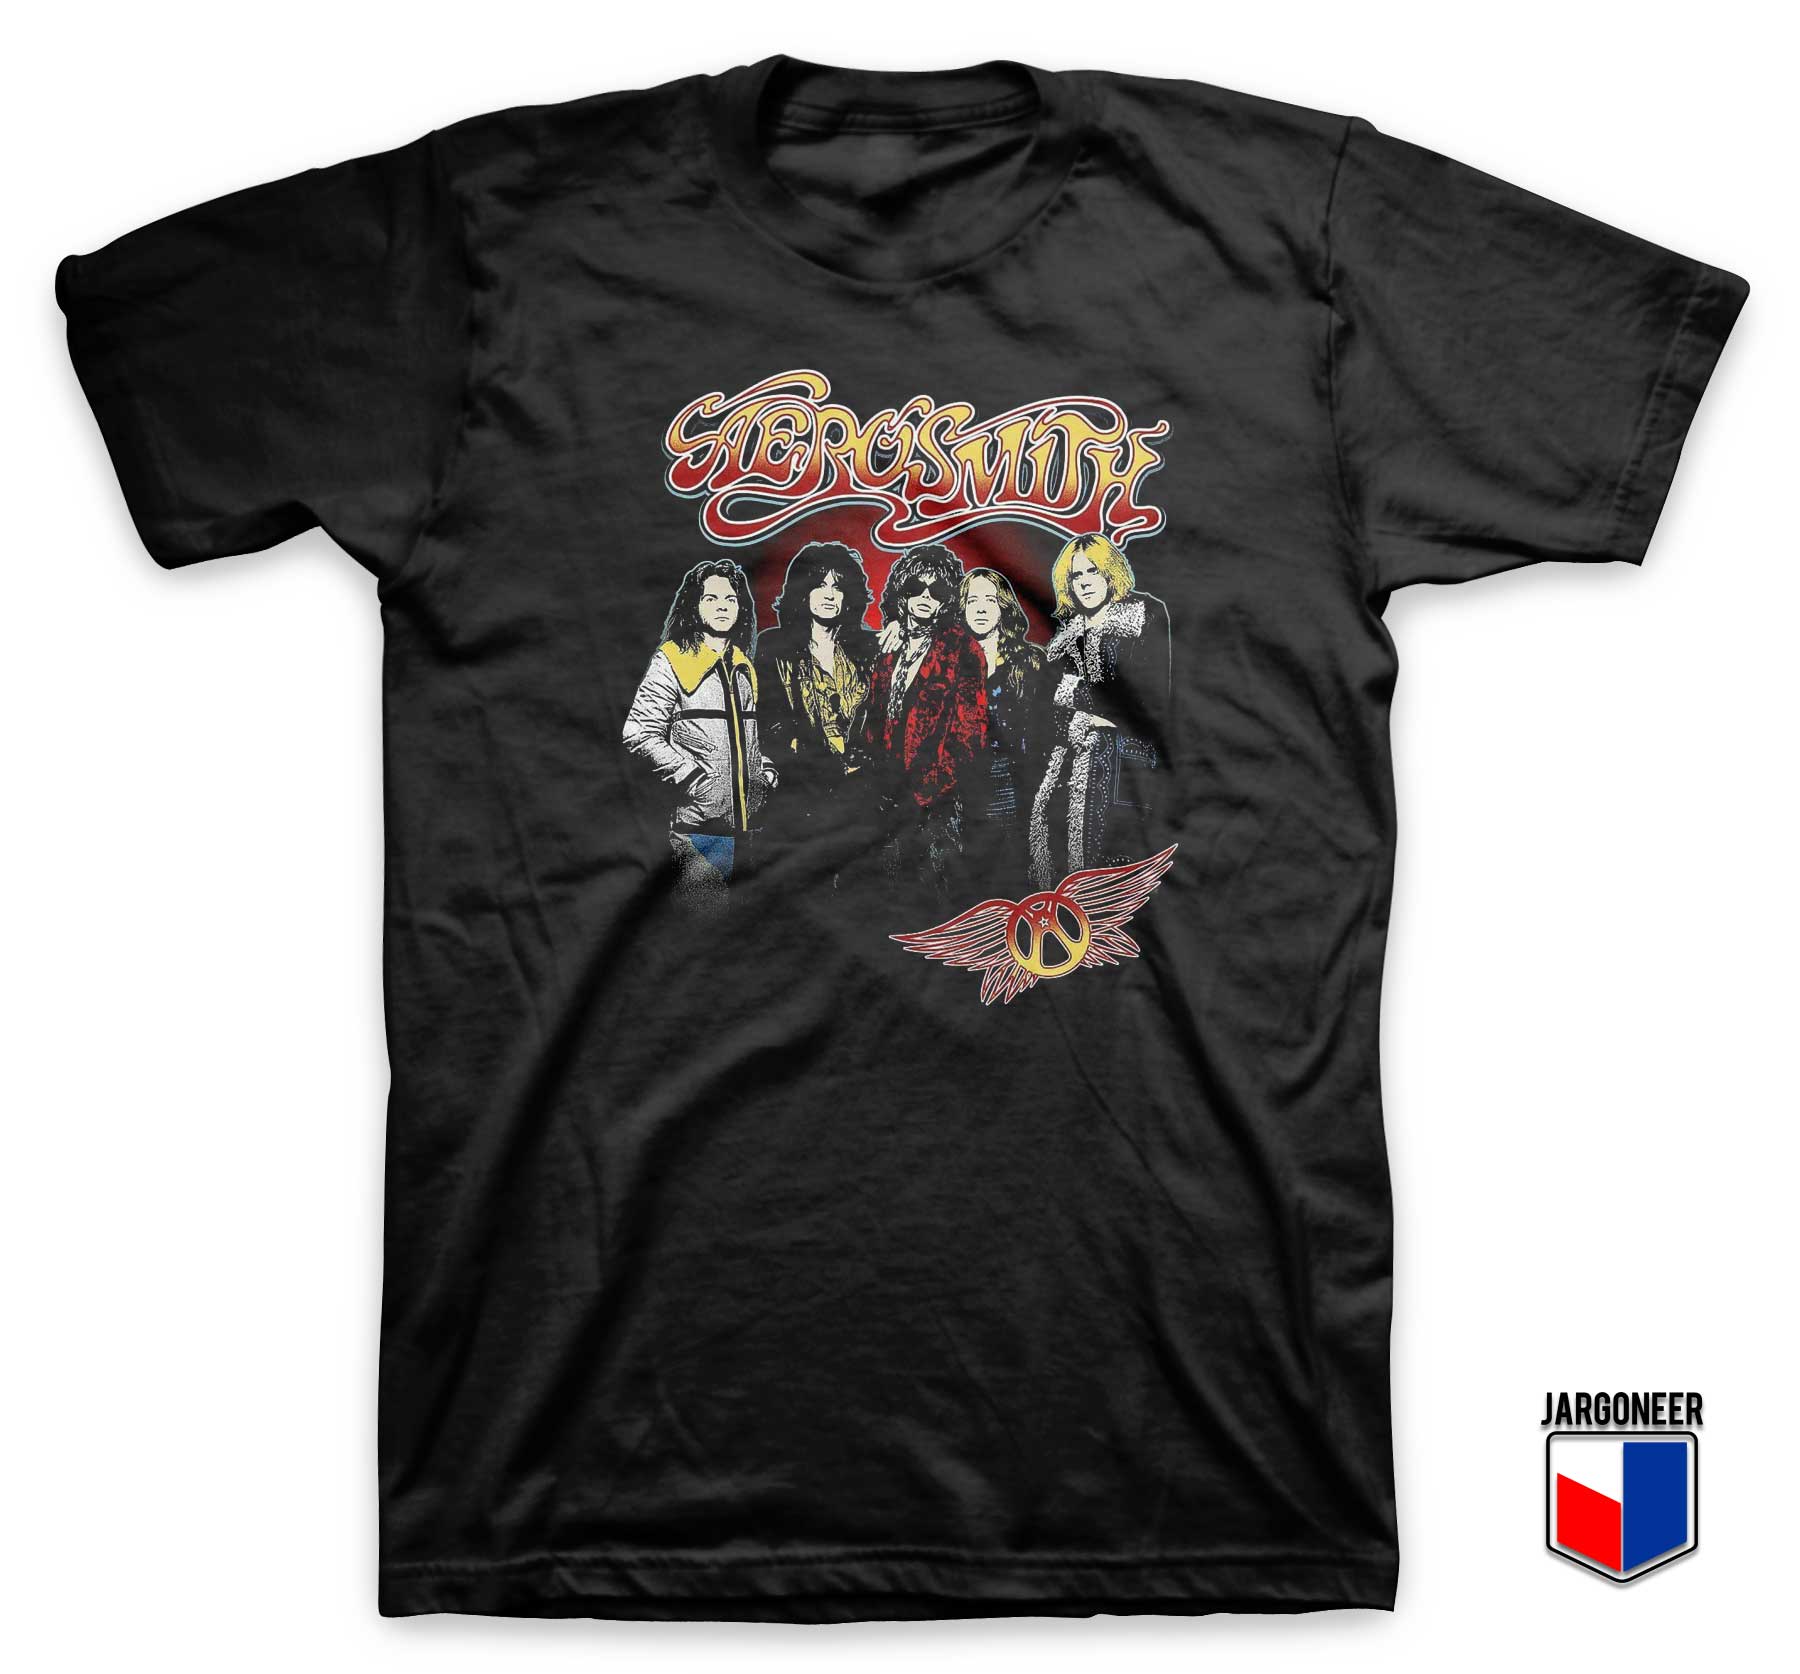 Aerosmith 1970 T Shirt - Shop Unique Graphic Cool Shirt Designs